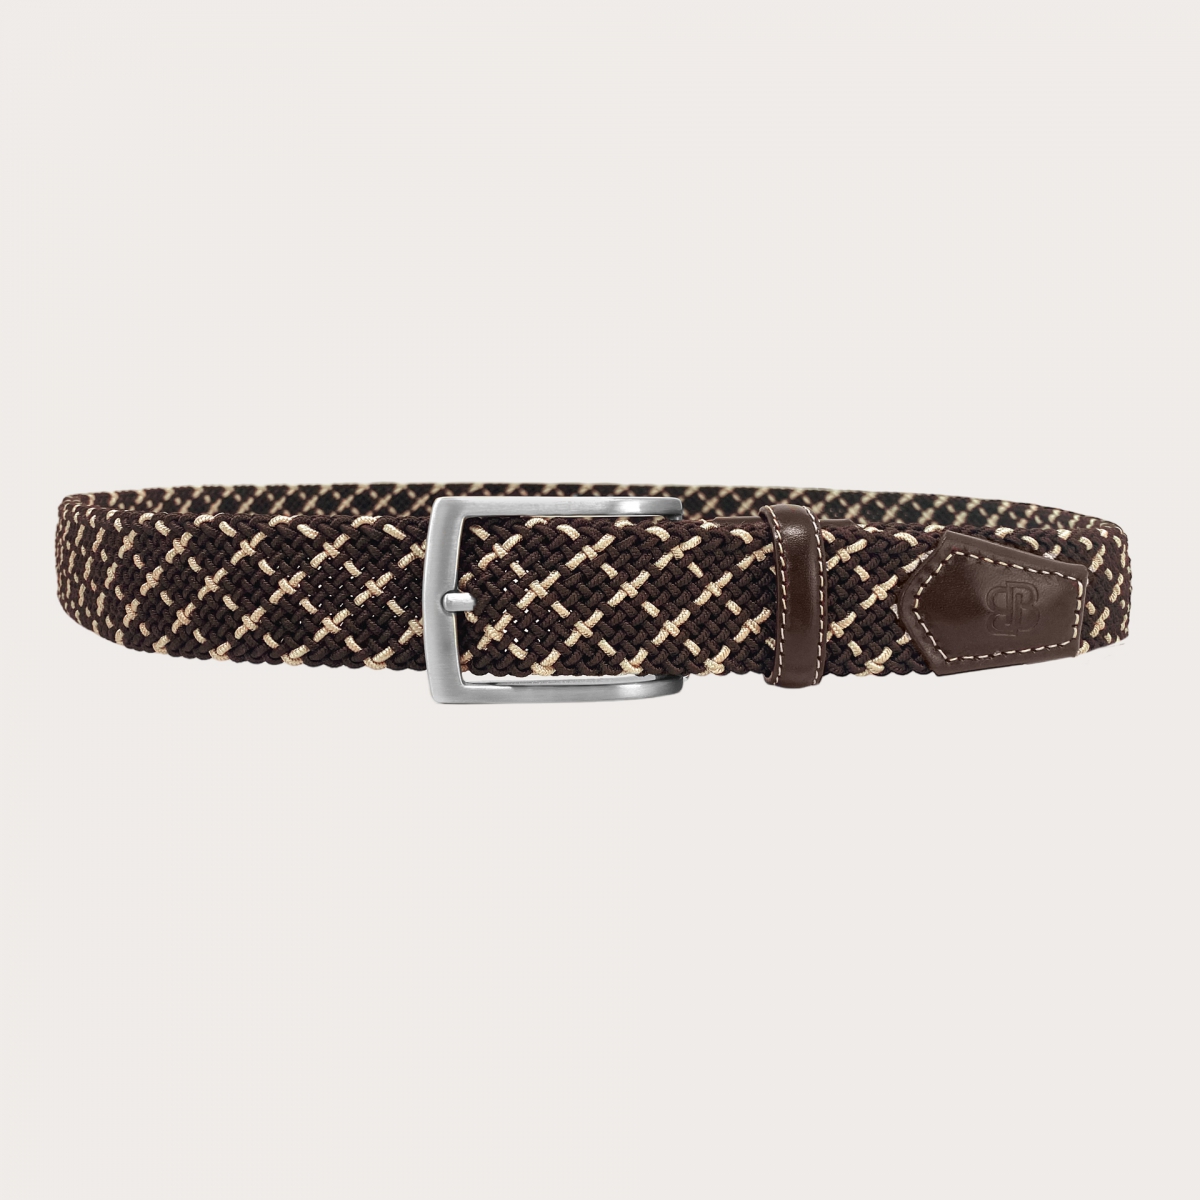 BRUCLE Elastic braided belt in brown and beige, nickel free